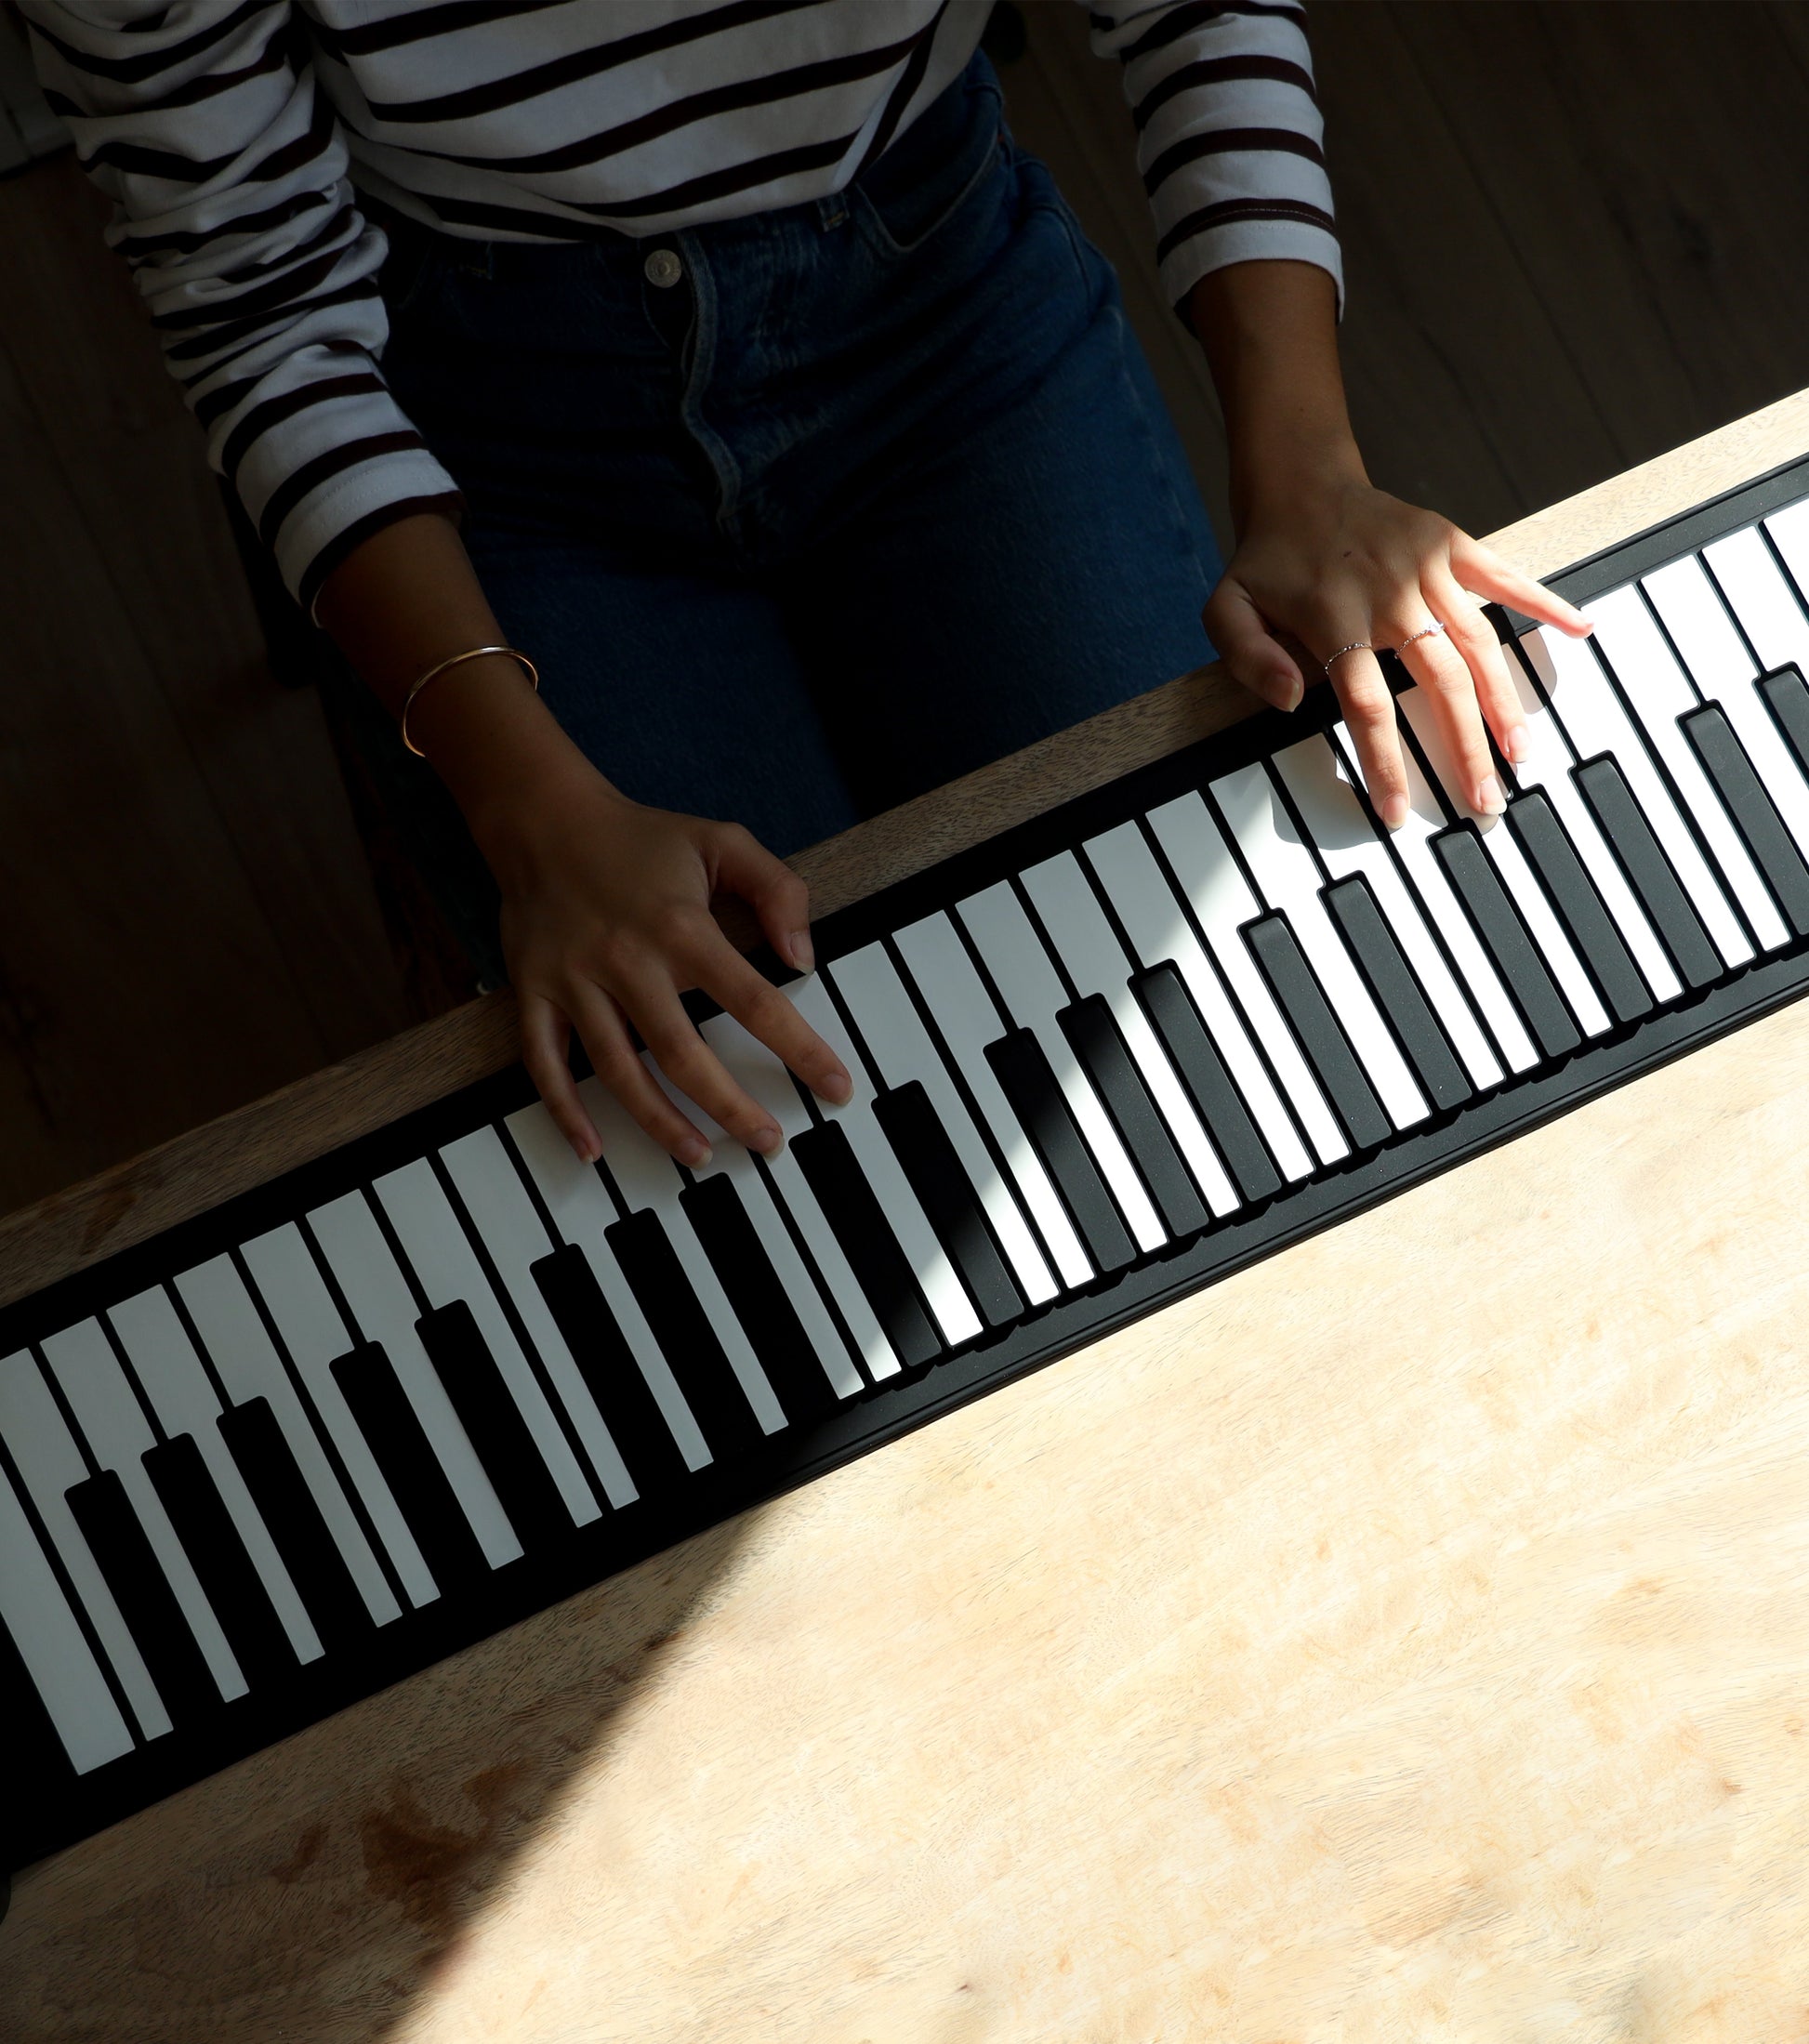 Piano Roll Up à enrouler, piano à clavier numérique – L'avant gardiste